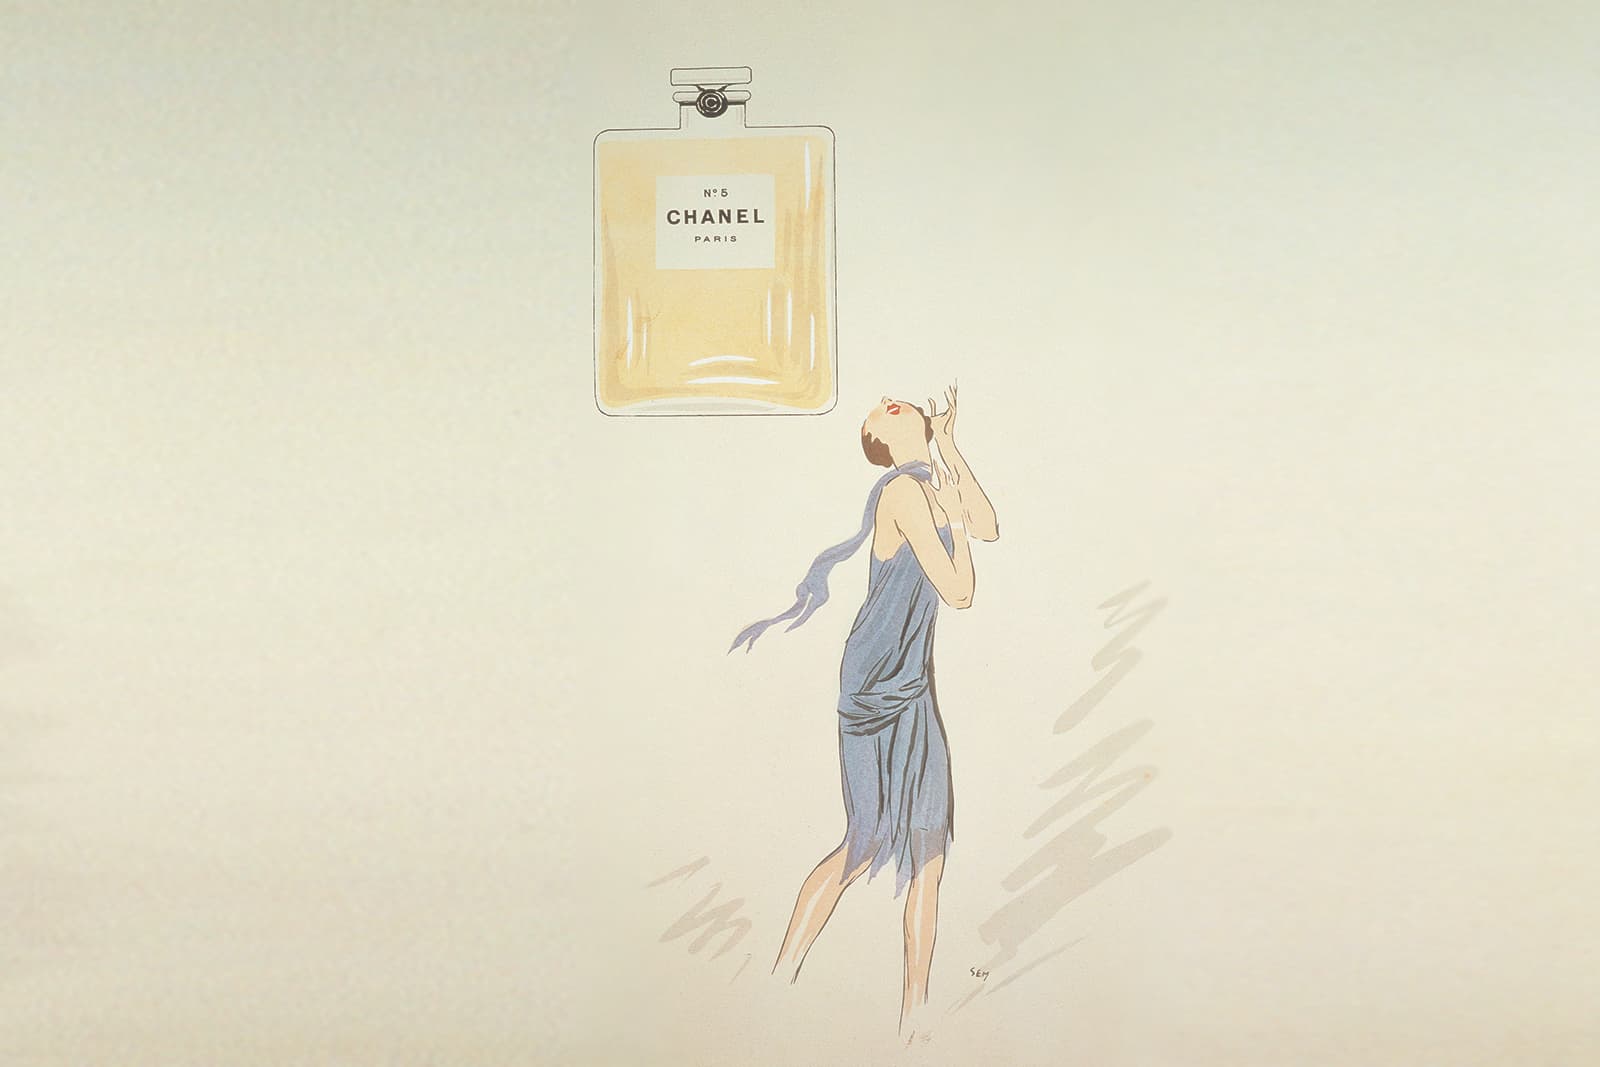 В 2021 году Дом празднует 100-летний юбилей аромата Chanel N°5, и поэтому директор ювелирного направления Патрис Легеро посвятил парфюму новую коллекцию высокого ювелирного искусства Collection N°5